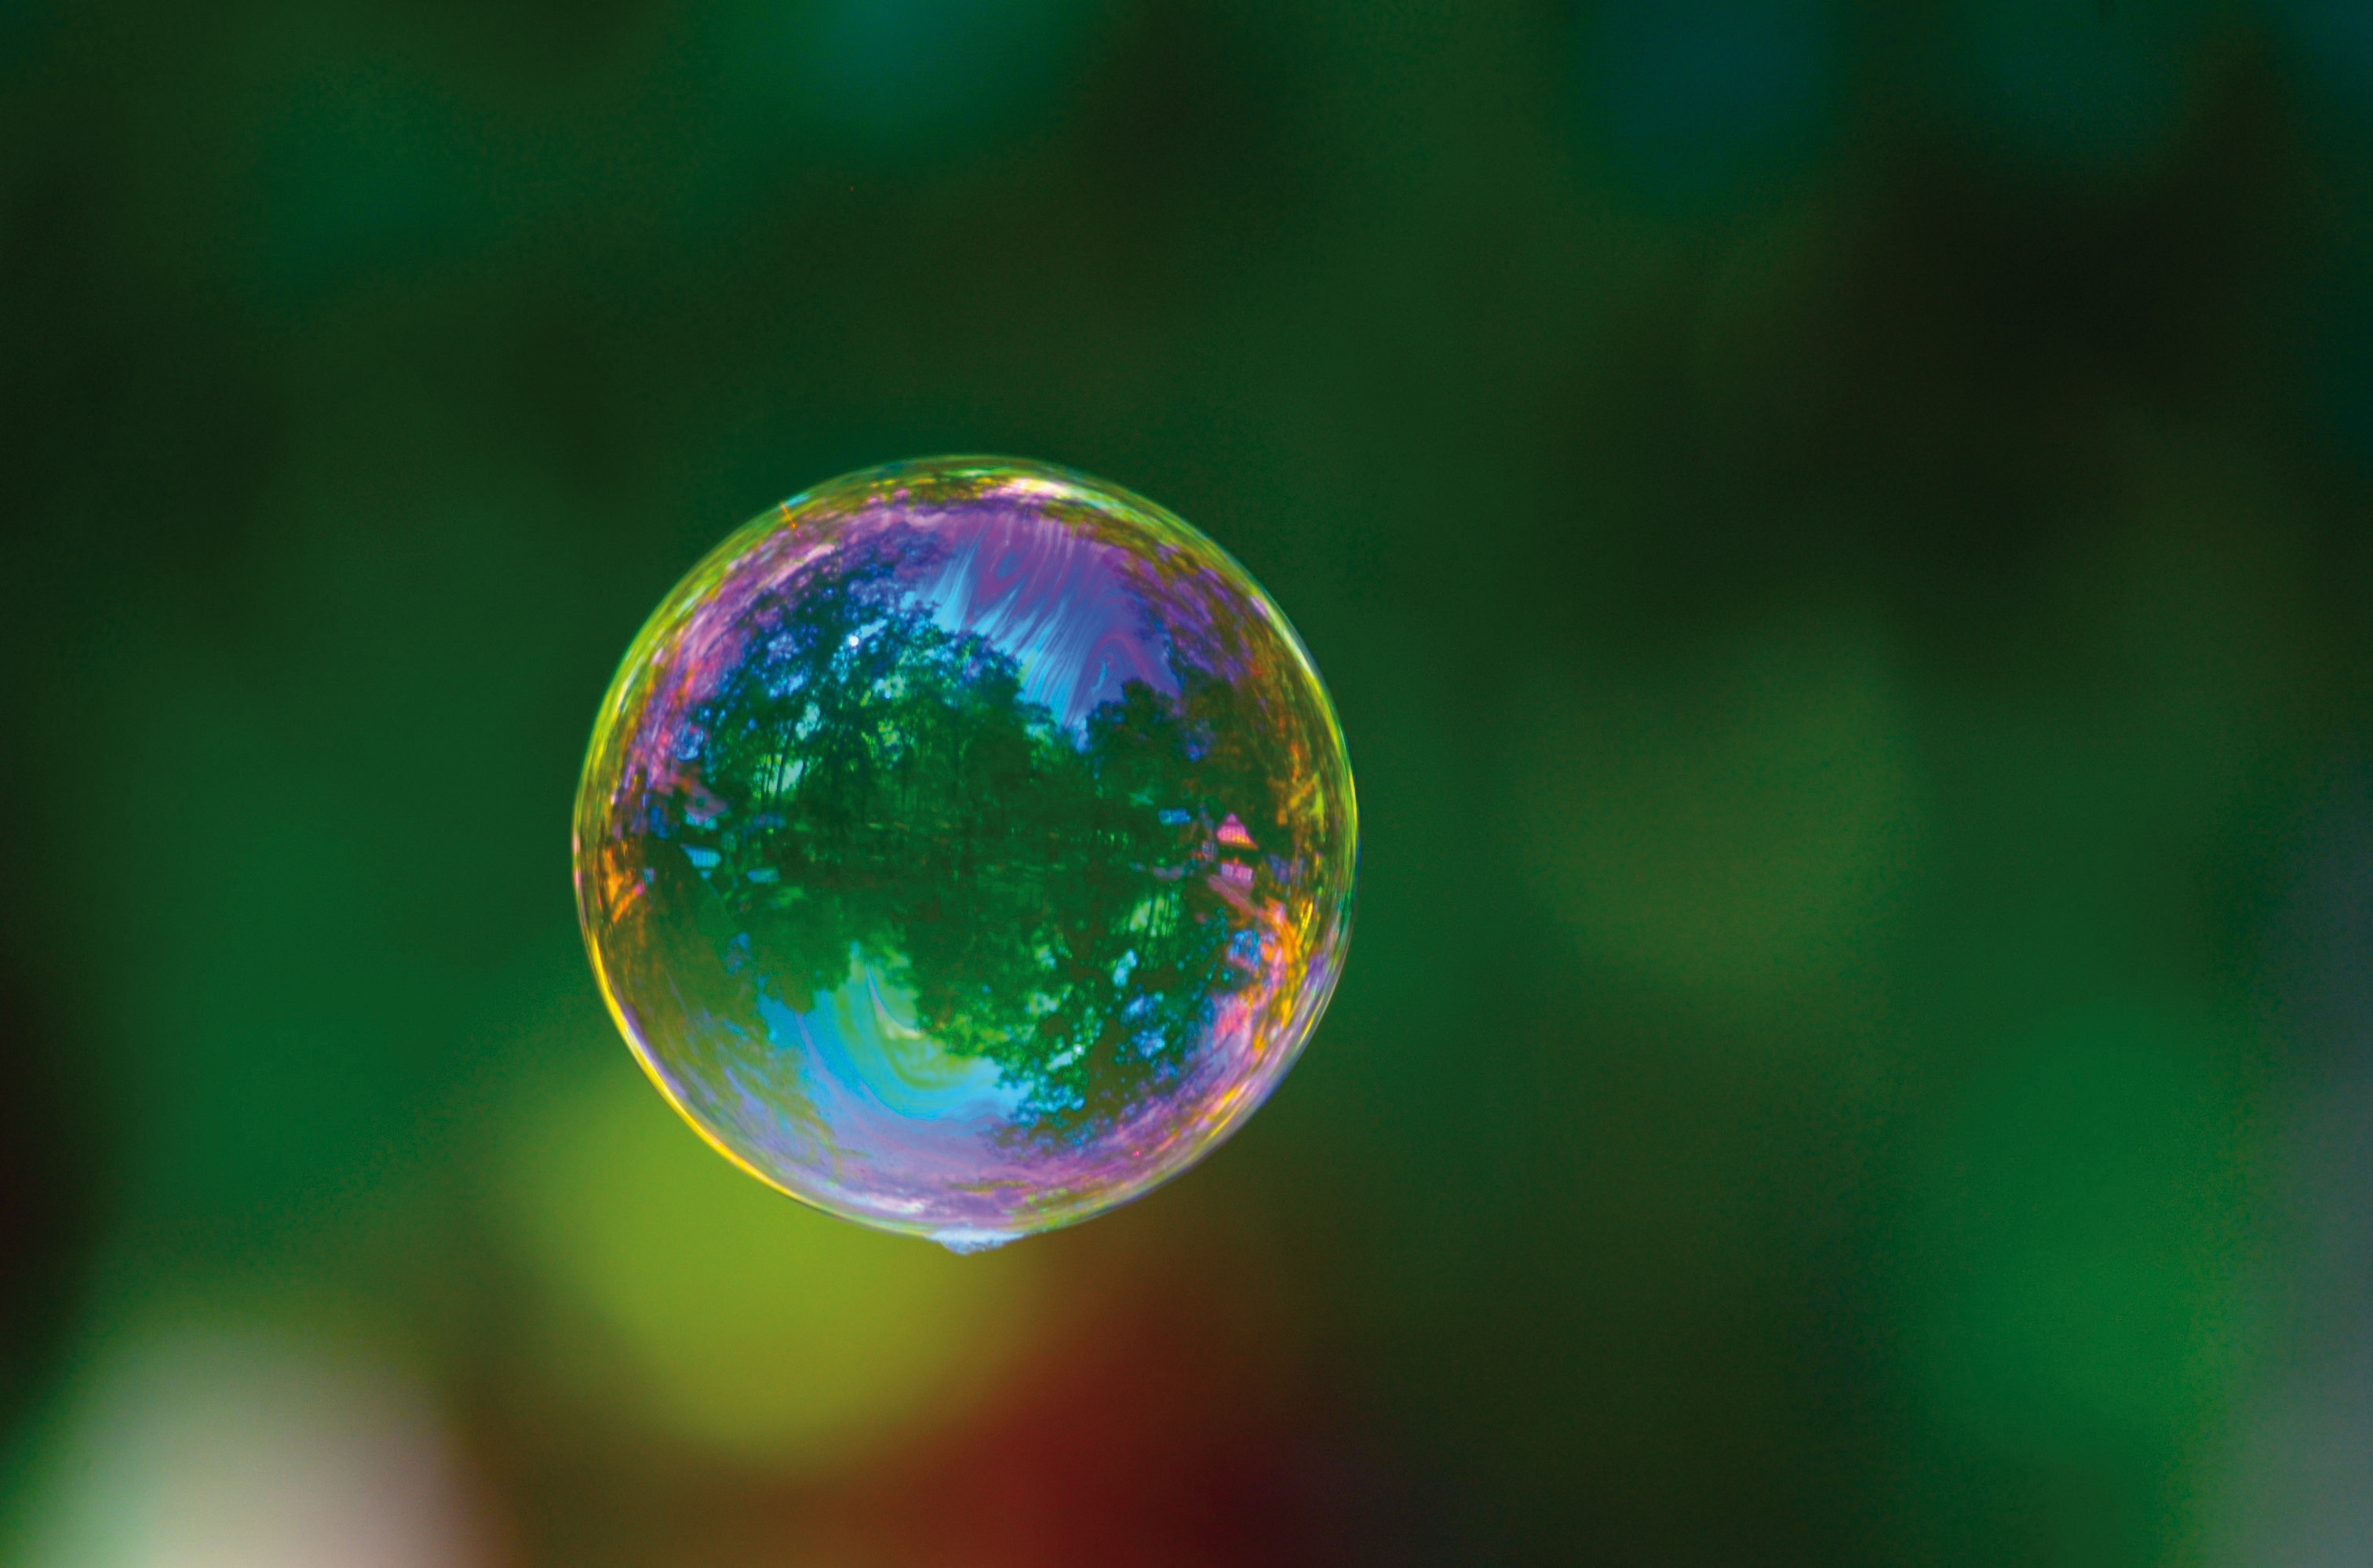 Les tensio-actifs intelligents, ou comment faire éclater des bulles sur commande